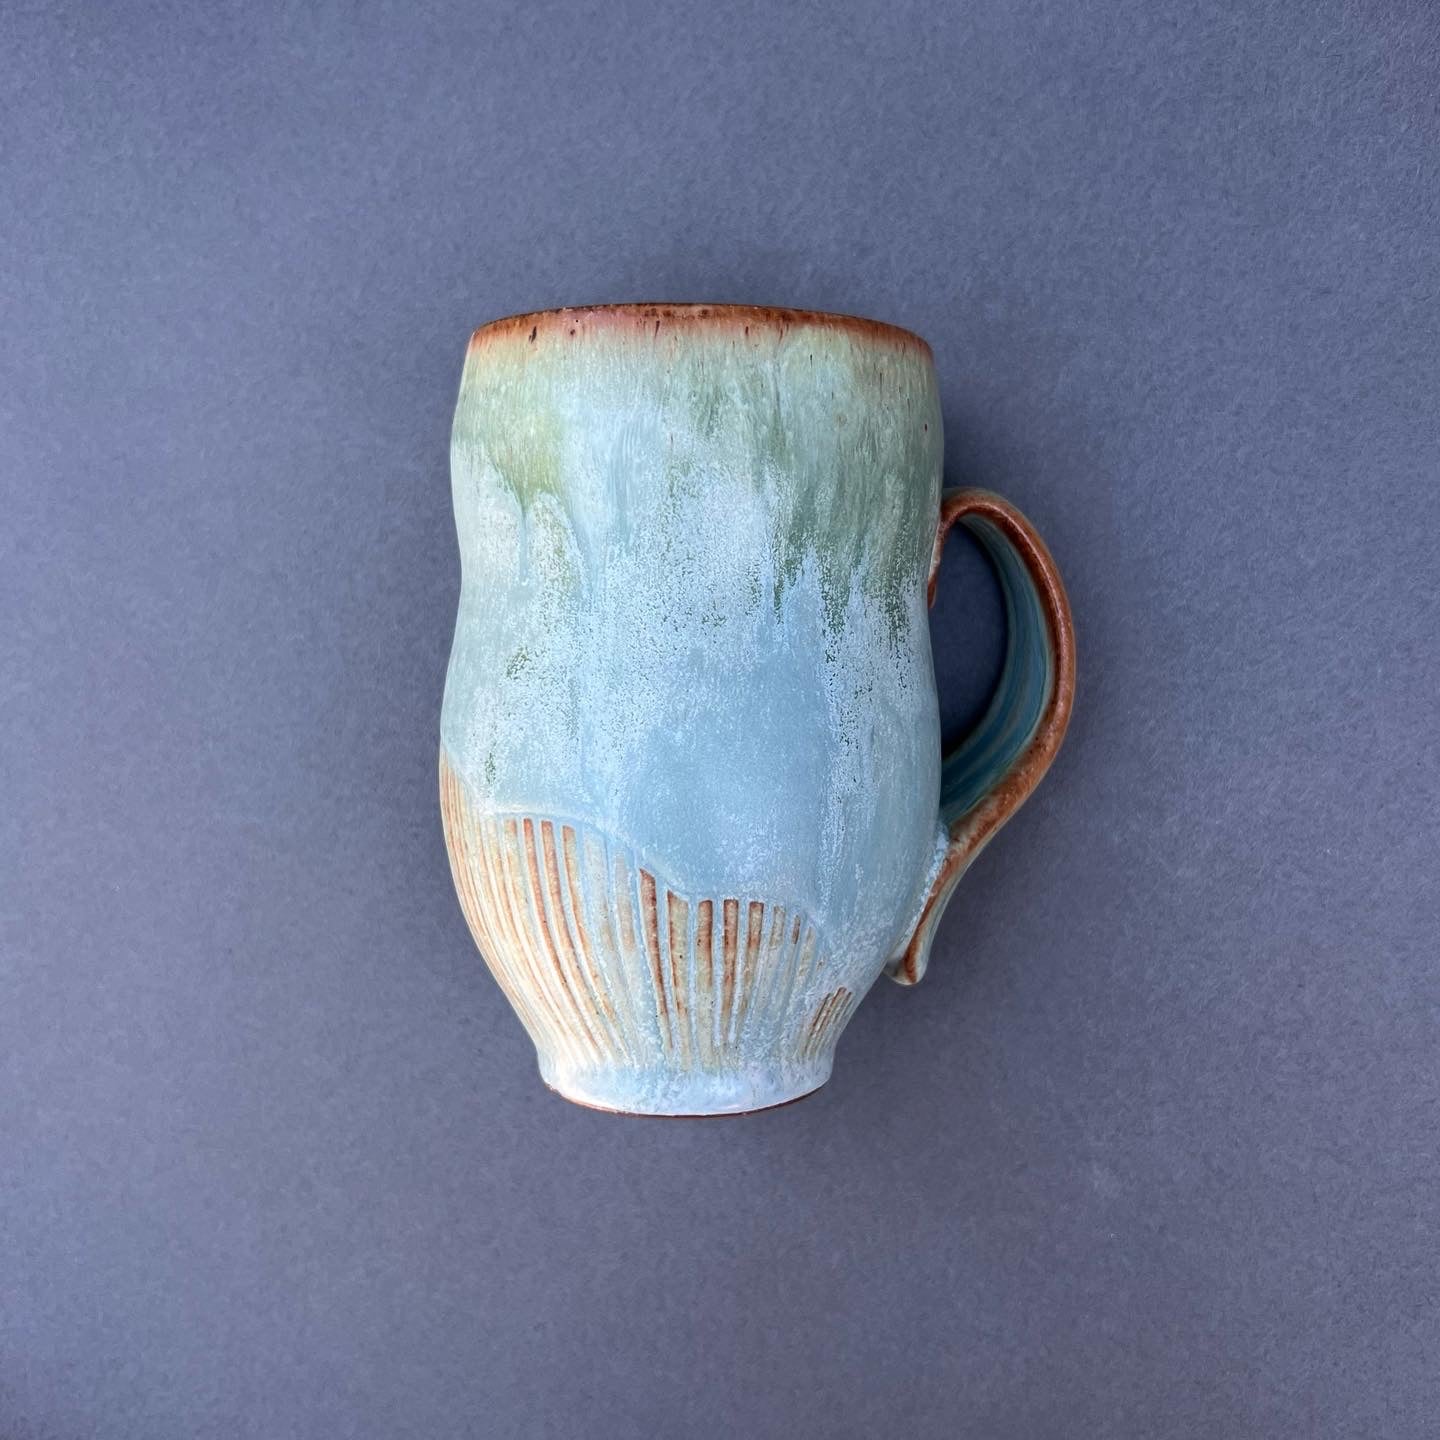 Large Copper Mug